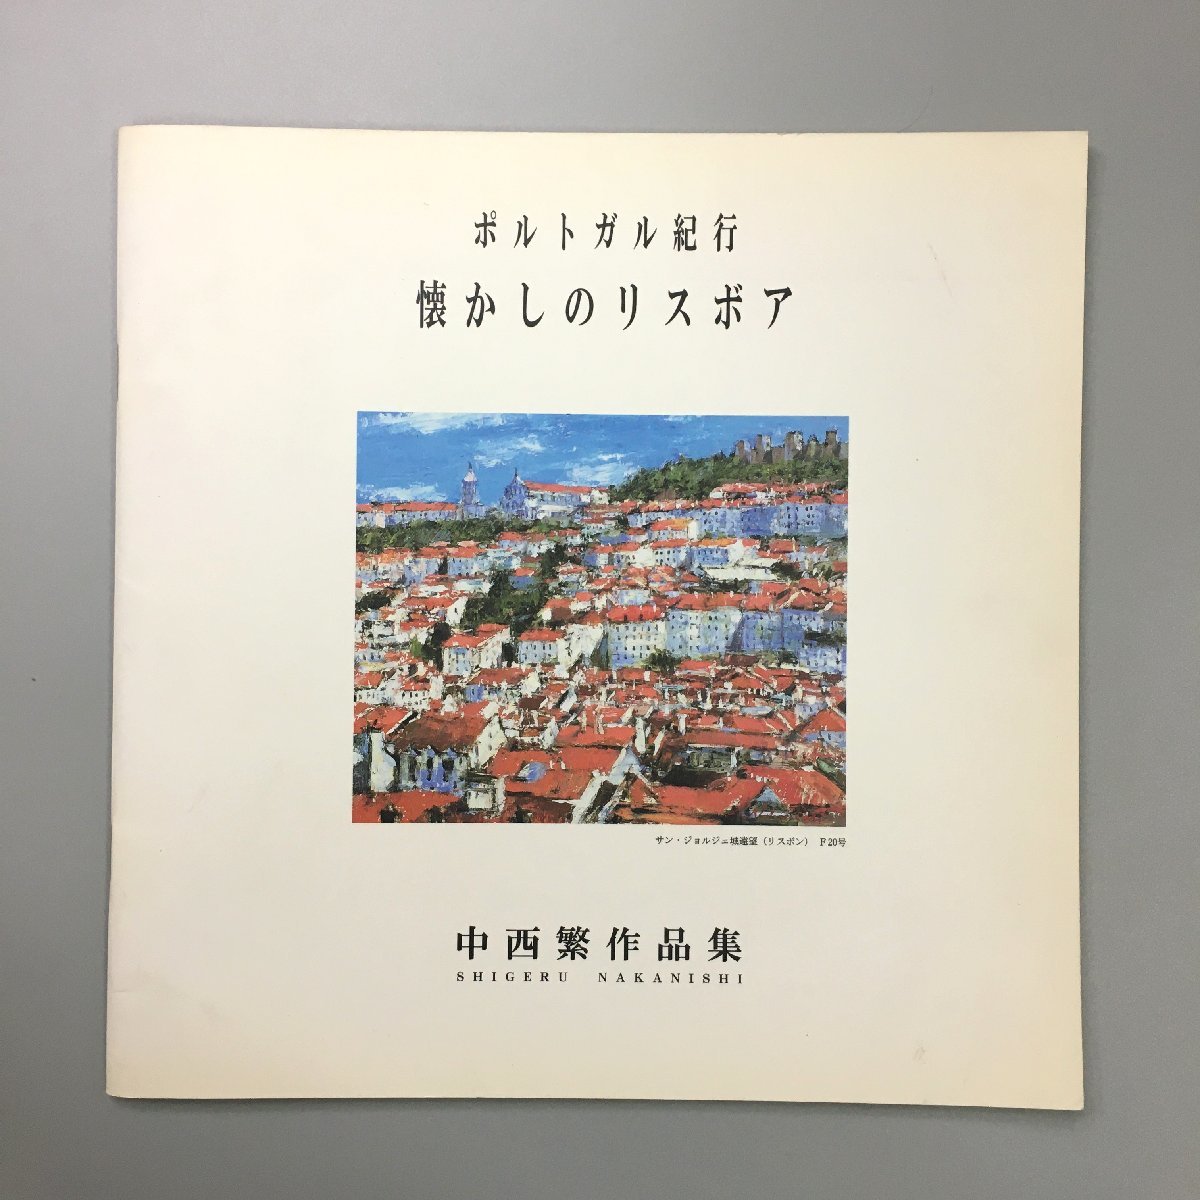 Autographed Shigeru Nakanishi Art Collection: Travels in Portugal: Nostalgic Lisboa Signed Art Collection, Painting, Art Book, Collection, Art Book